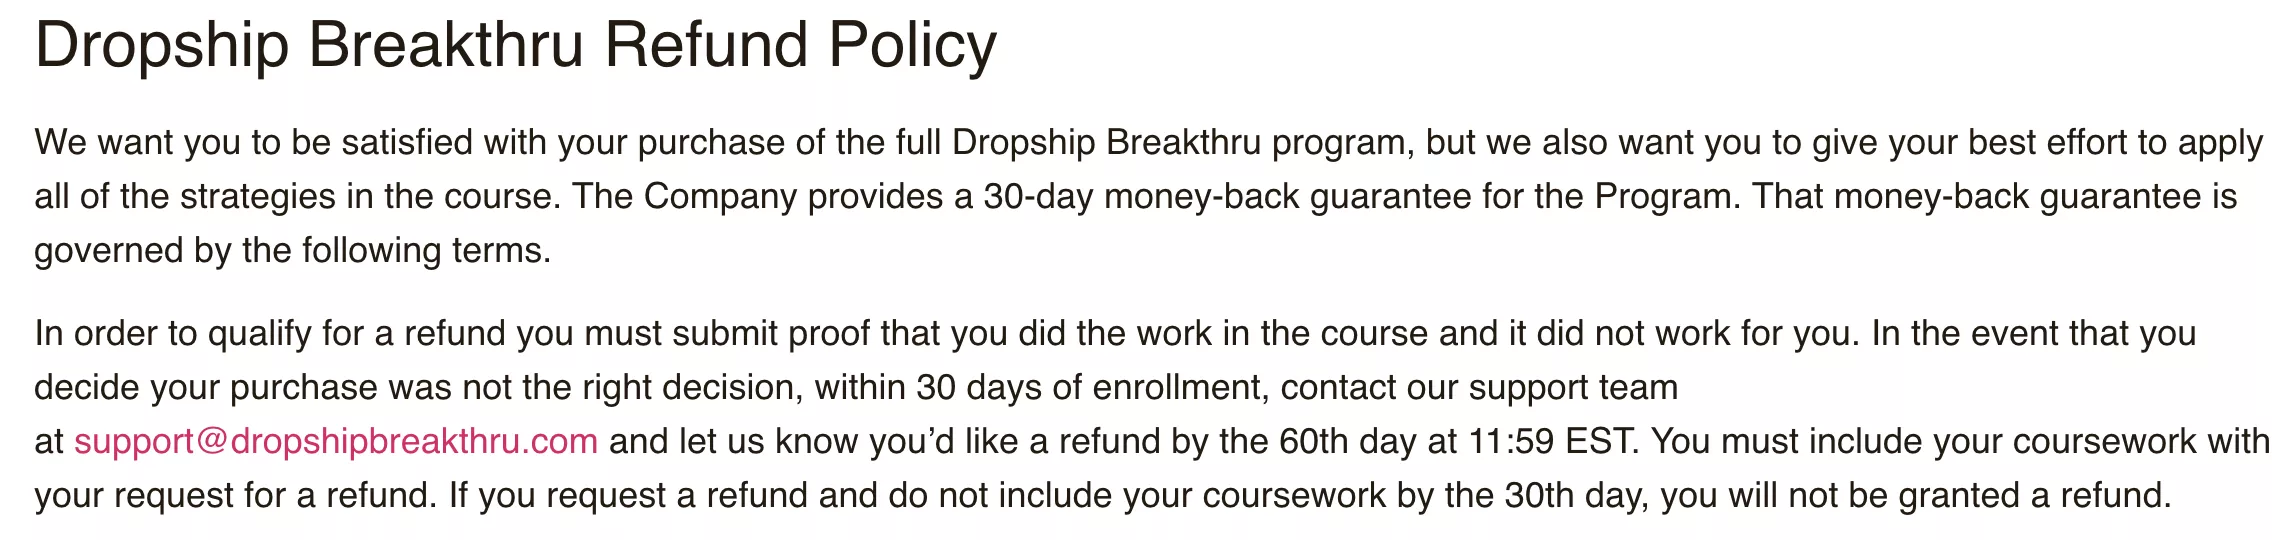 Dropship Breakthru Refund Policy